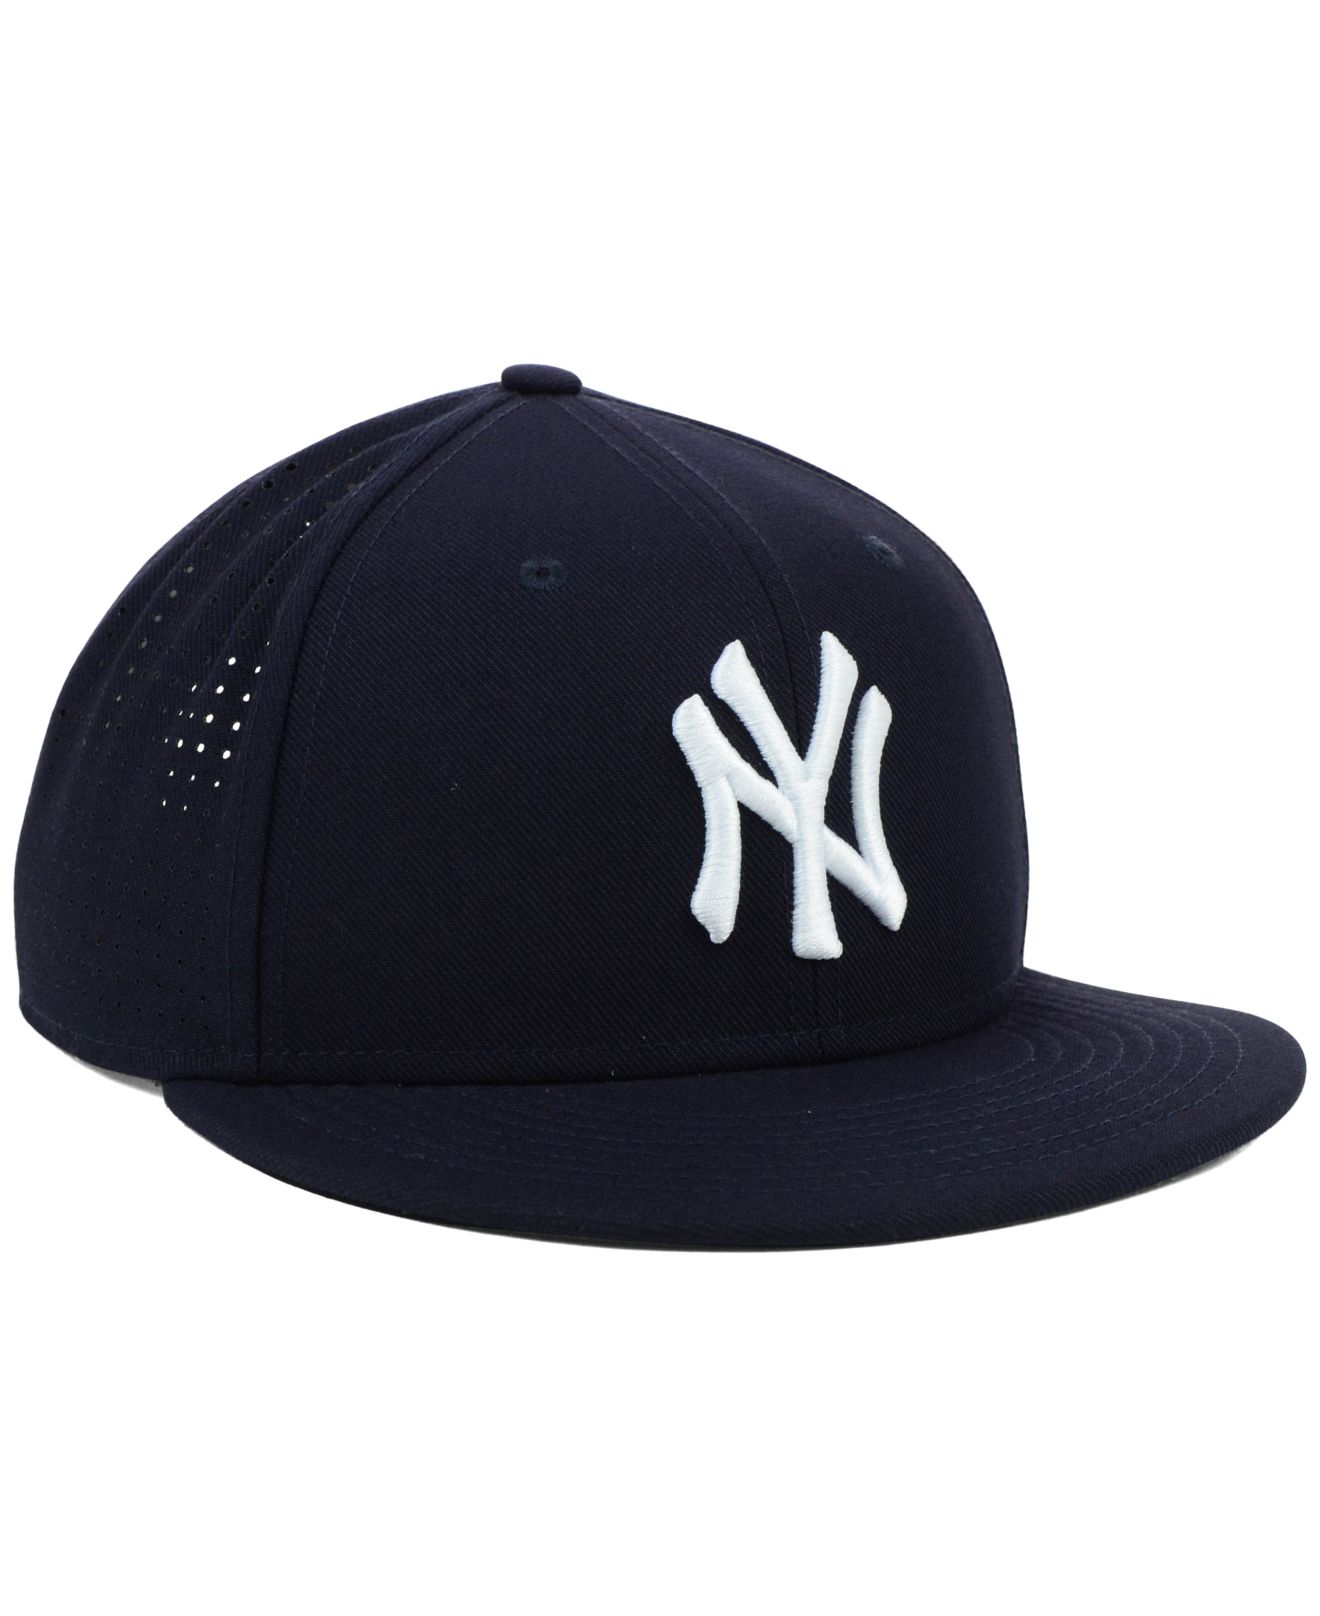 new york yankees dri fit hat